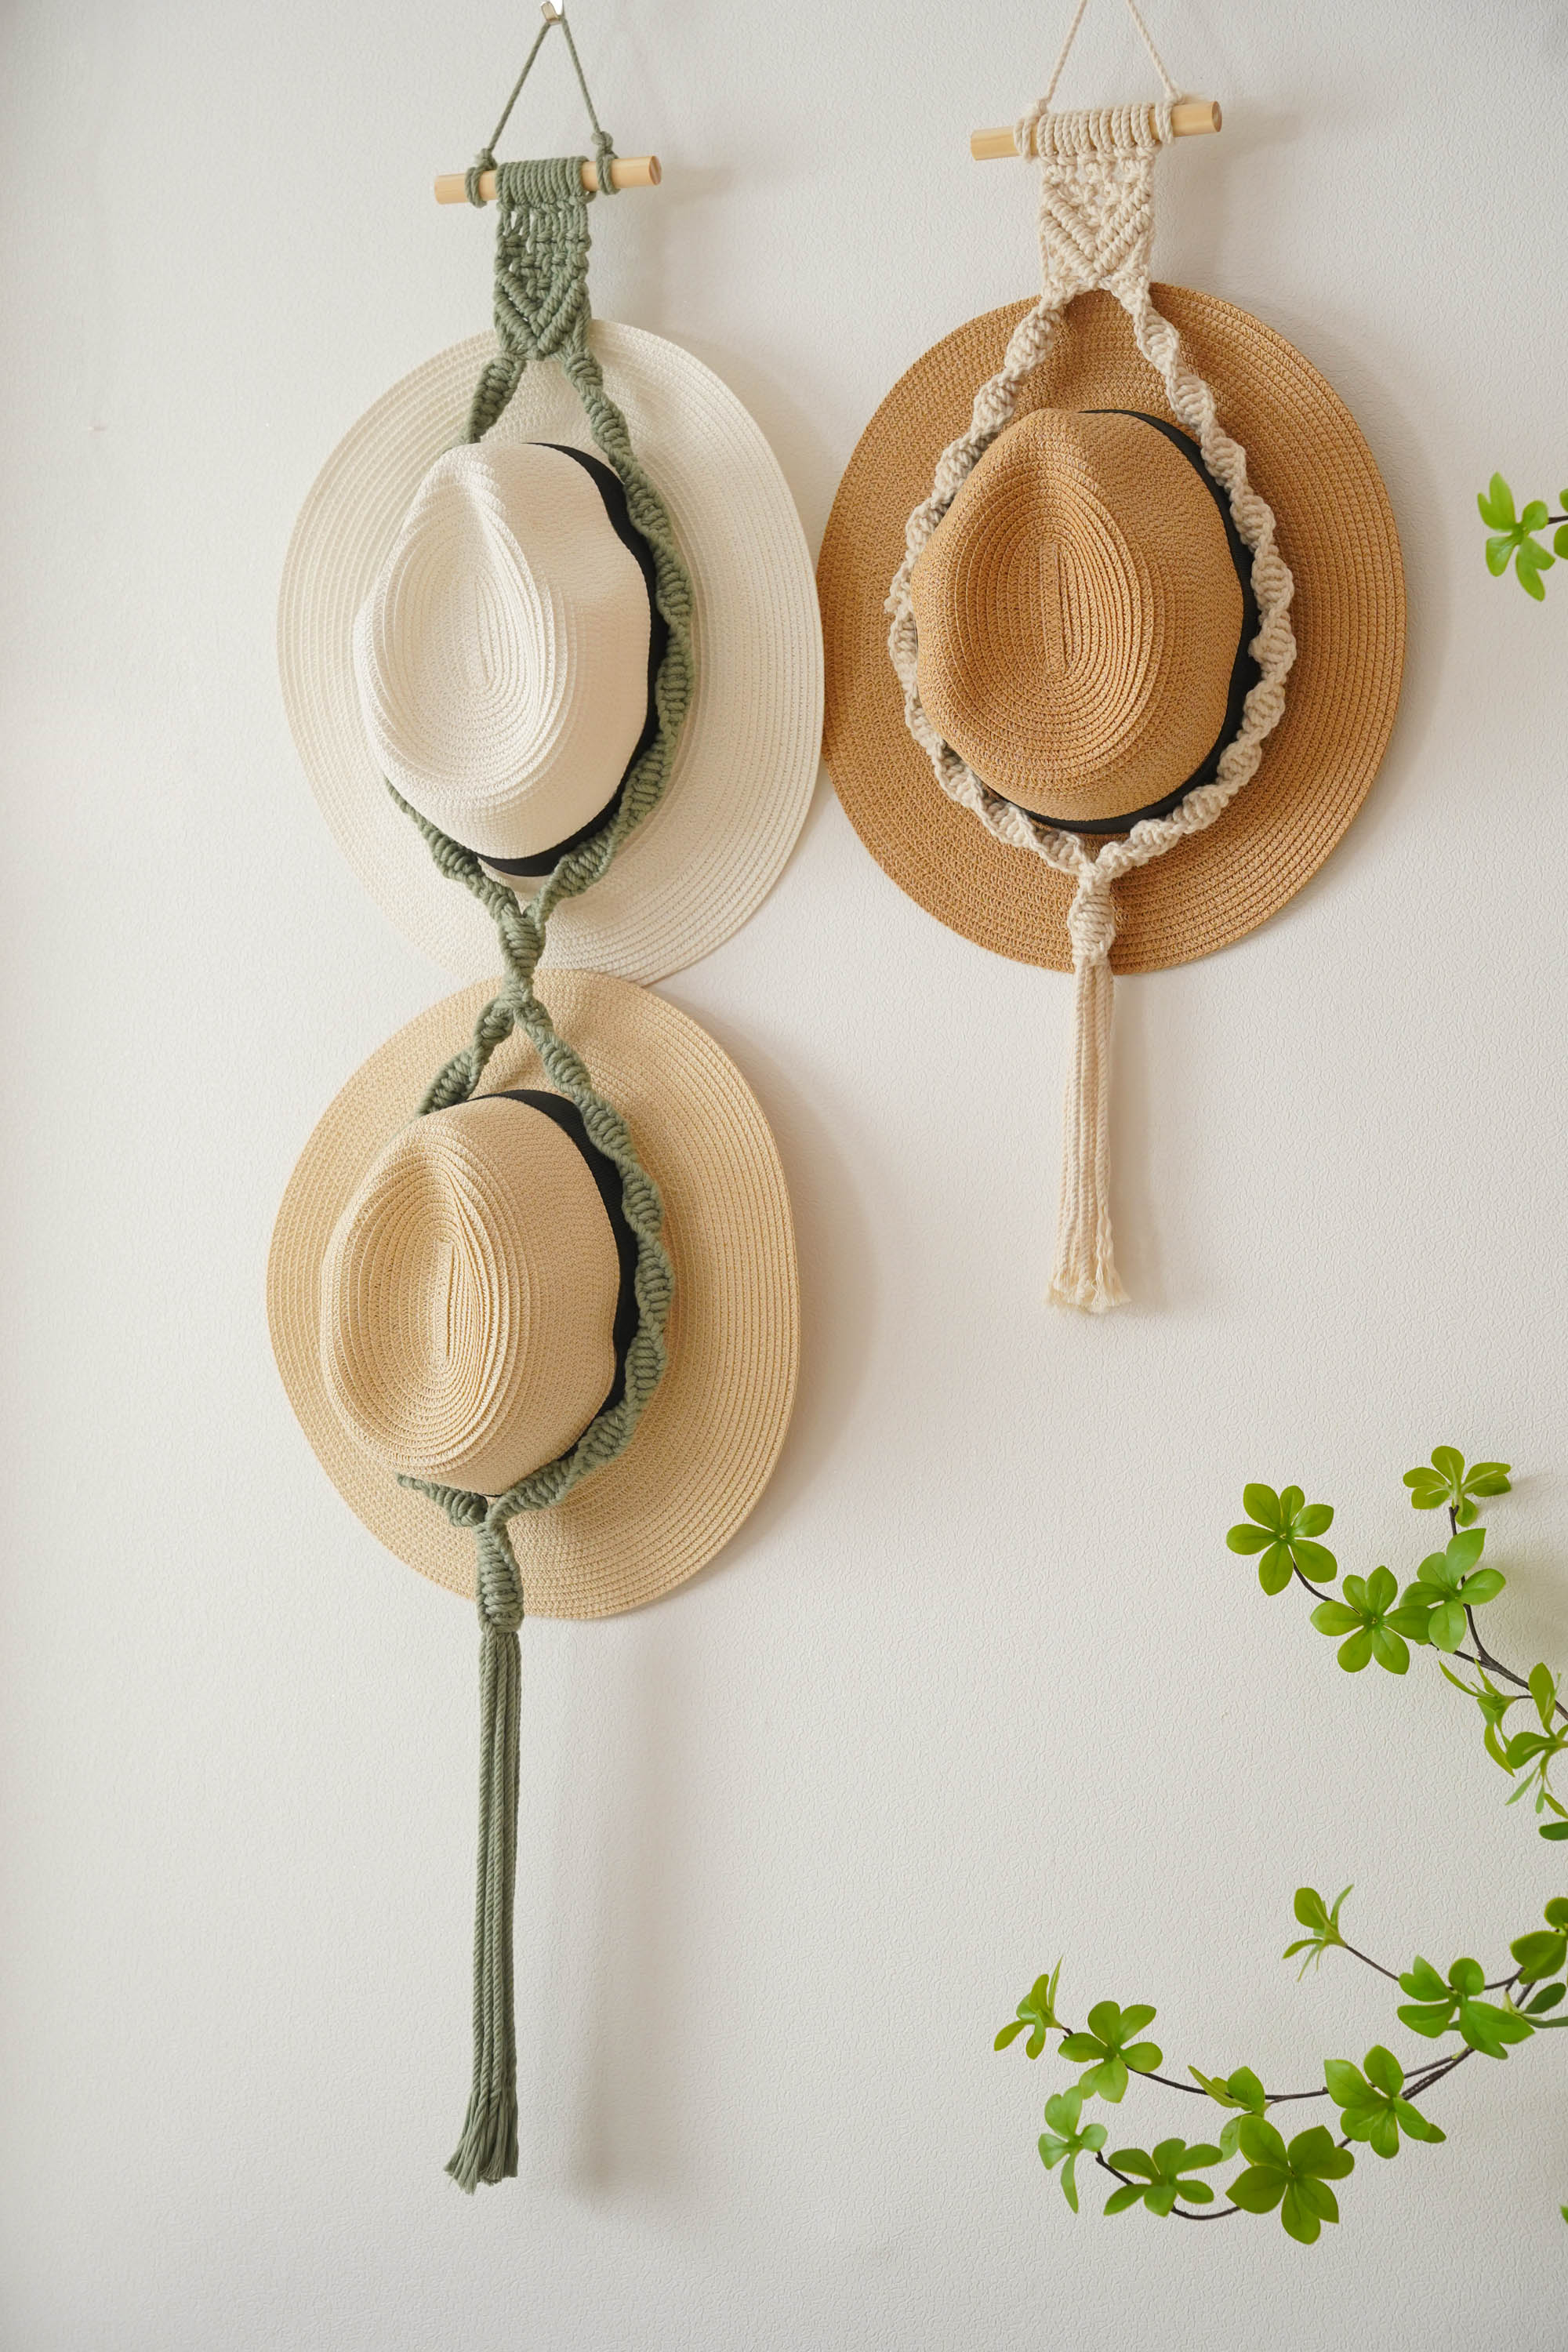 Macrame Hat Hanger Patterns for Boho Hat Storage